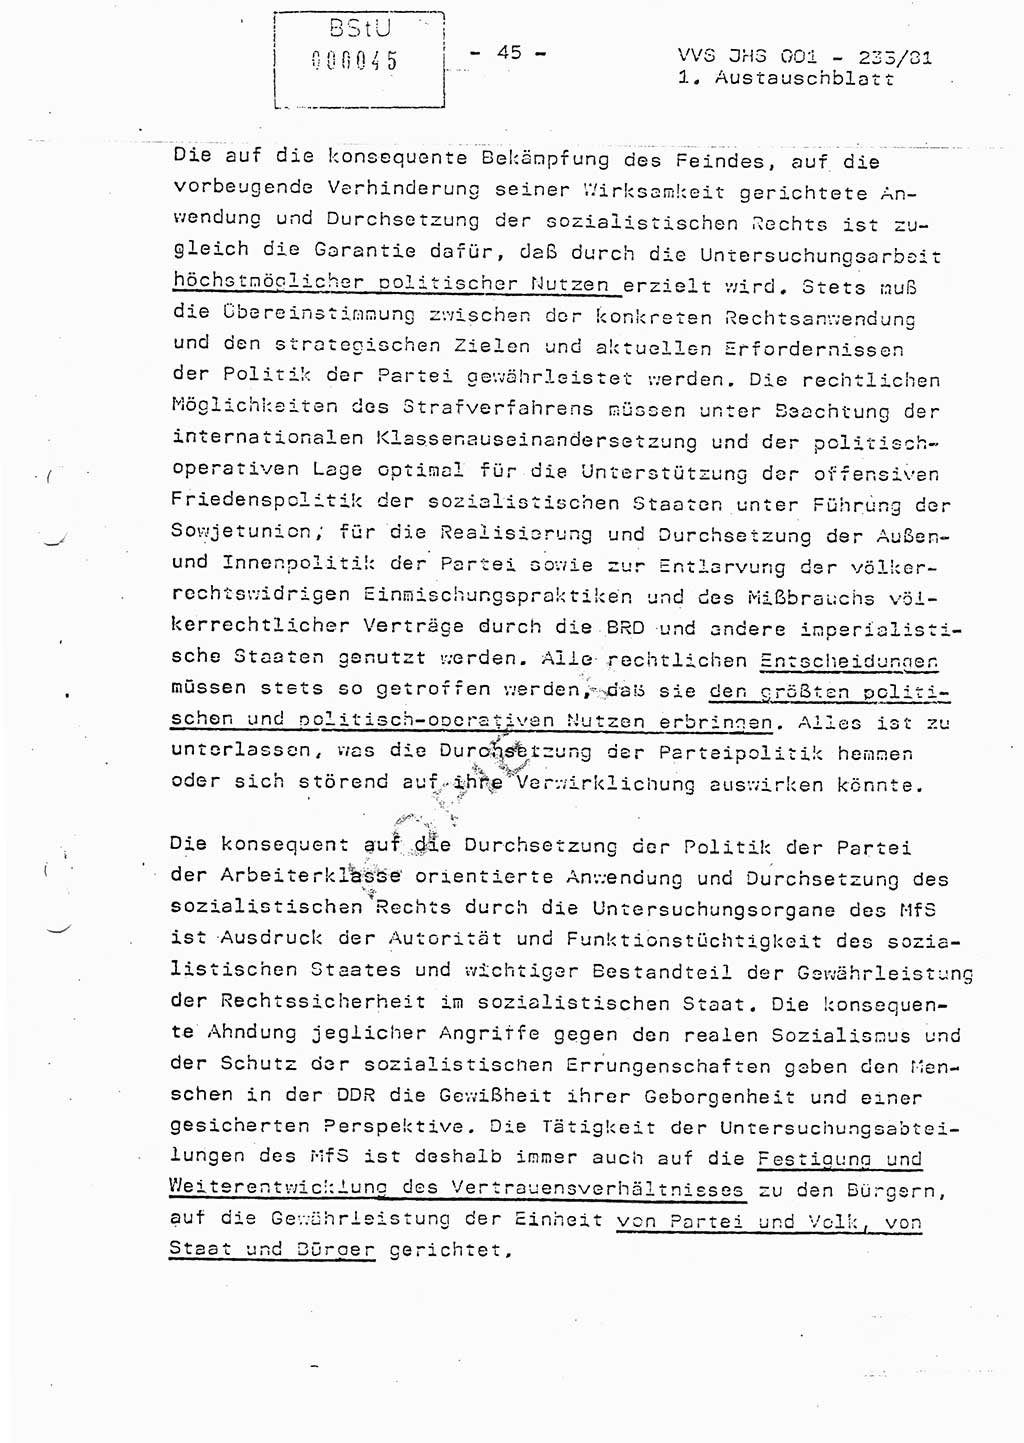 Dissertation Oberstleutnant Horst Zank (JHS), Oberstleutnant Dr. Karl-Heinz Knoblauch (JHS), Oberstleutnant Gustav-Adolf Kowalewski (HA Ⅸ), Oberstleutnant Wolfgang Plötner (HA Ⅸ), Ministerium für Staatssicherheit (MfS) [Deutsche Demokratische Republik (DDR)], Juristische Hochschule (JHS), Vertrauliche Verschlußsache (VVS) o001-233/81, Potsdam 1981, Blatt 45 (Diss. MfS DDR JHS VVS o001-233/81 1981, Bl. 45)